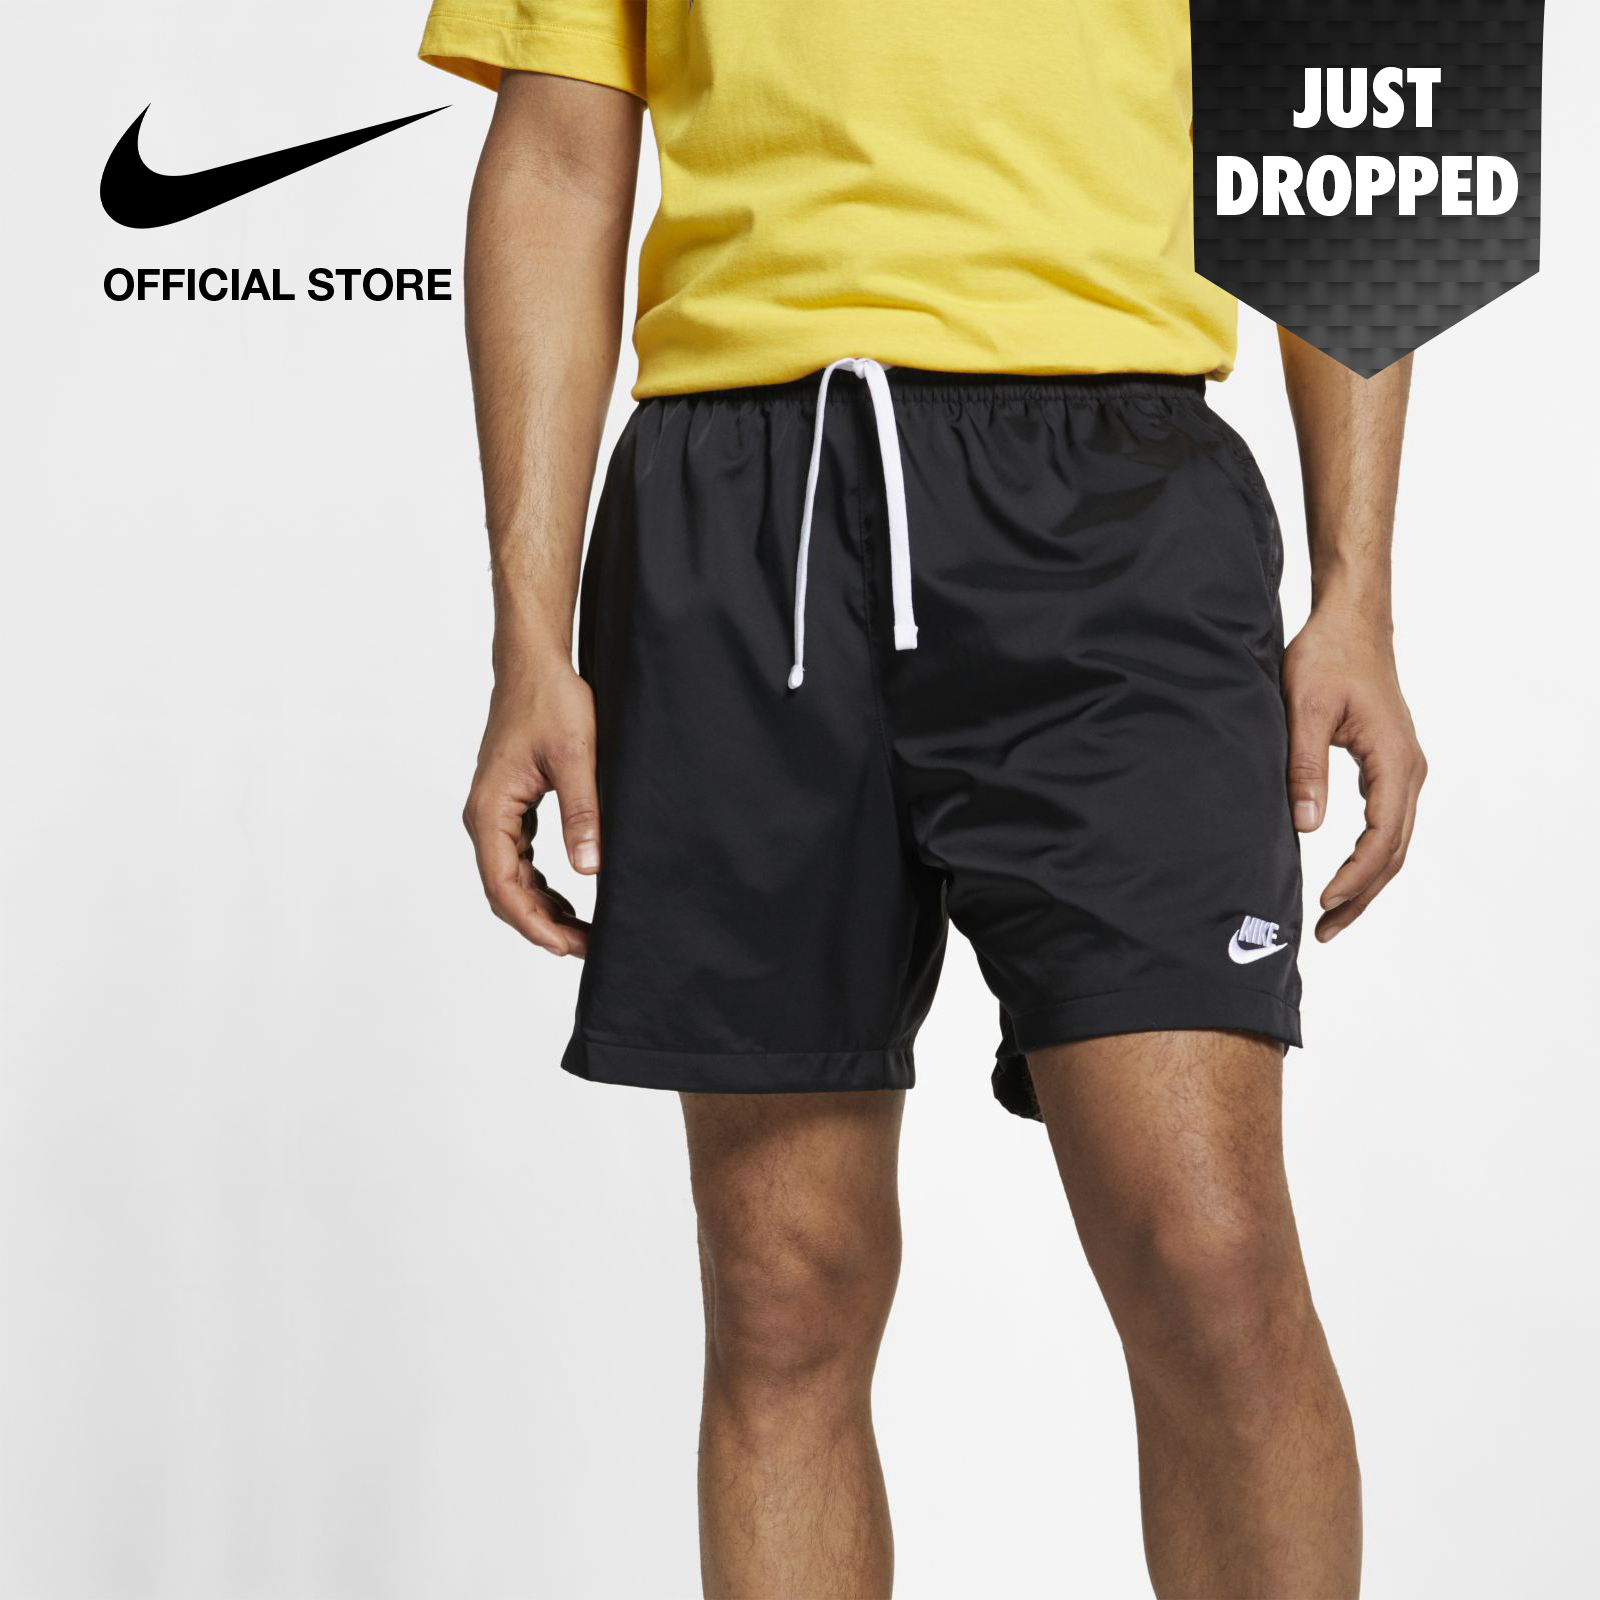 Nike Men's Sportswear Woven Short - Black ไนกี้ กางเกงสปอร์ตแวร์ผู้ชายแบบทอ - สีดำ